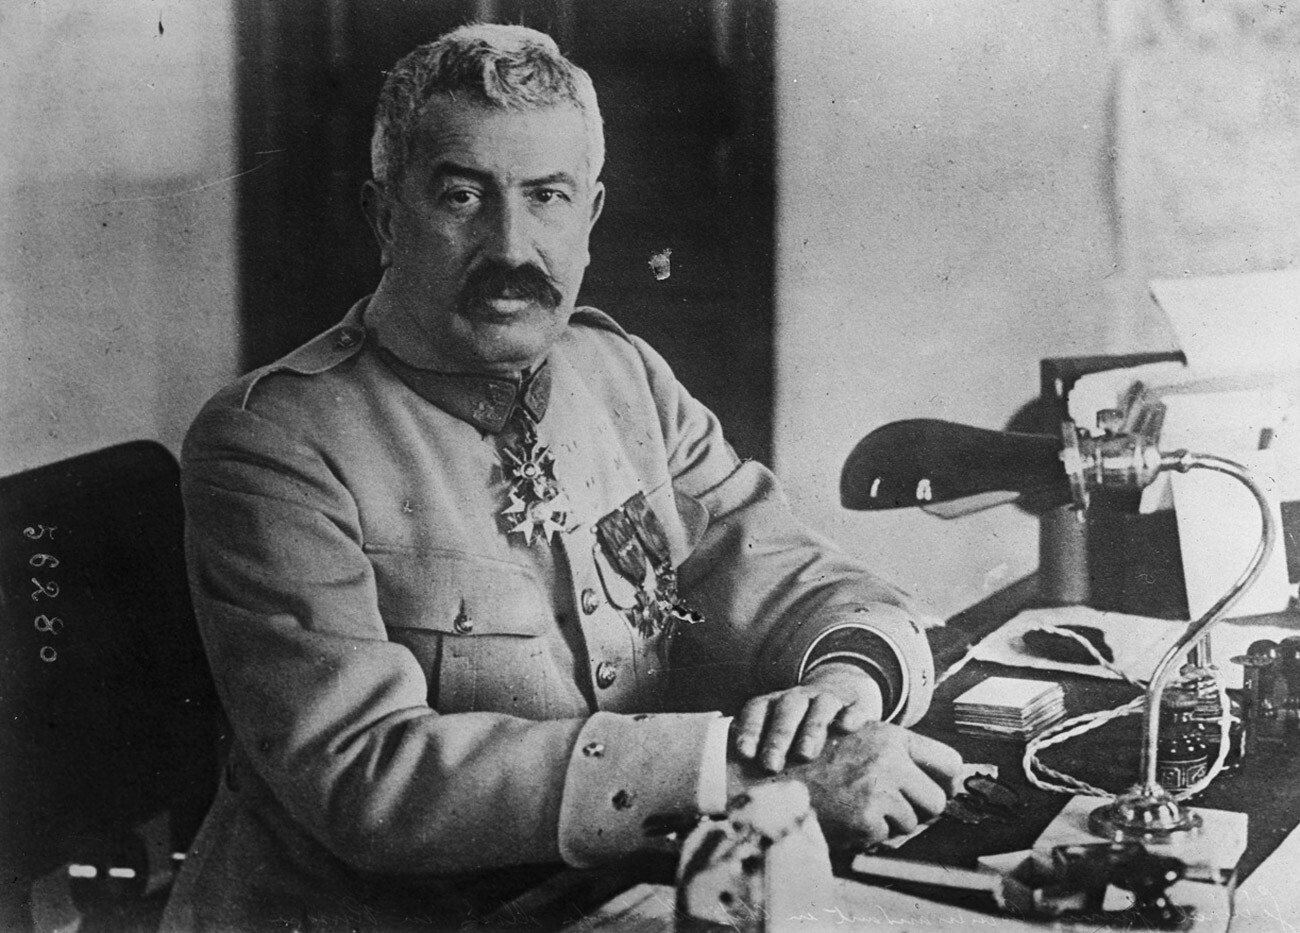 Il generale francese Maurice Janin (1862-1946) che comandò la Legione cecoslovacca e combatté in Siberia contro i bolscevichi, ma consegnò Kolchak al l Centro politico

